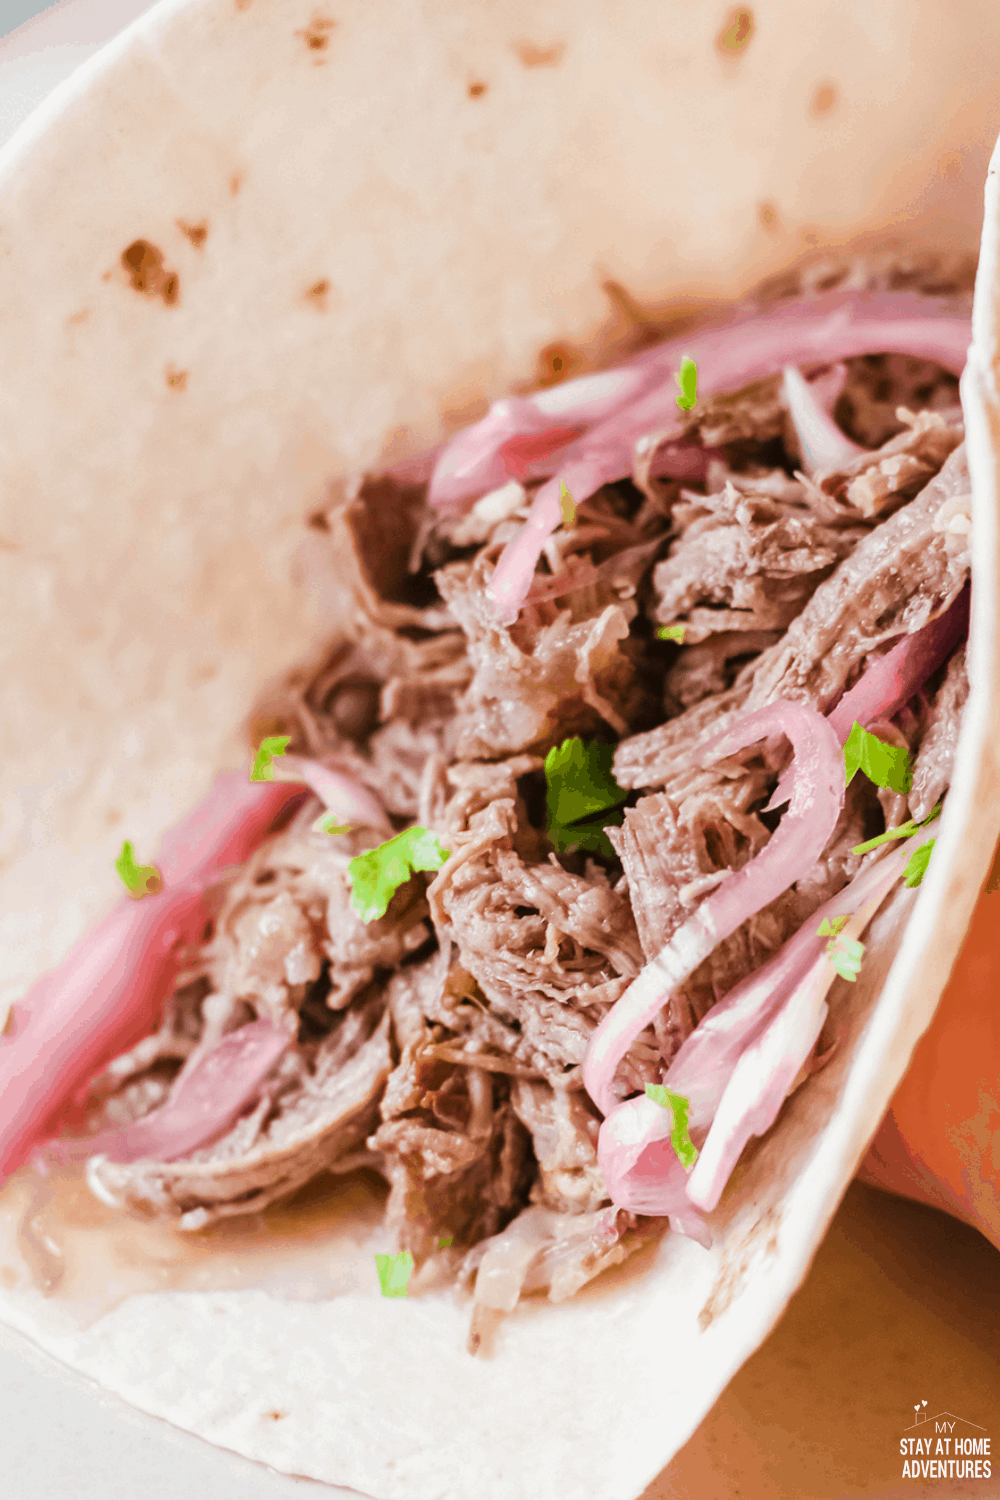 drcené hovězí tacos (tacos de Carne Deshebrada) jsou něžné, chutné a úžasné tacos, které vaše rodina požádá znovu a znovu. # tacos # tacosdeshebrada #shreddedbeeftacos #tacotuesday via @ mystayathome